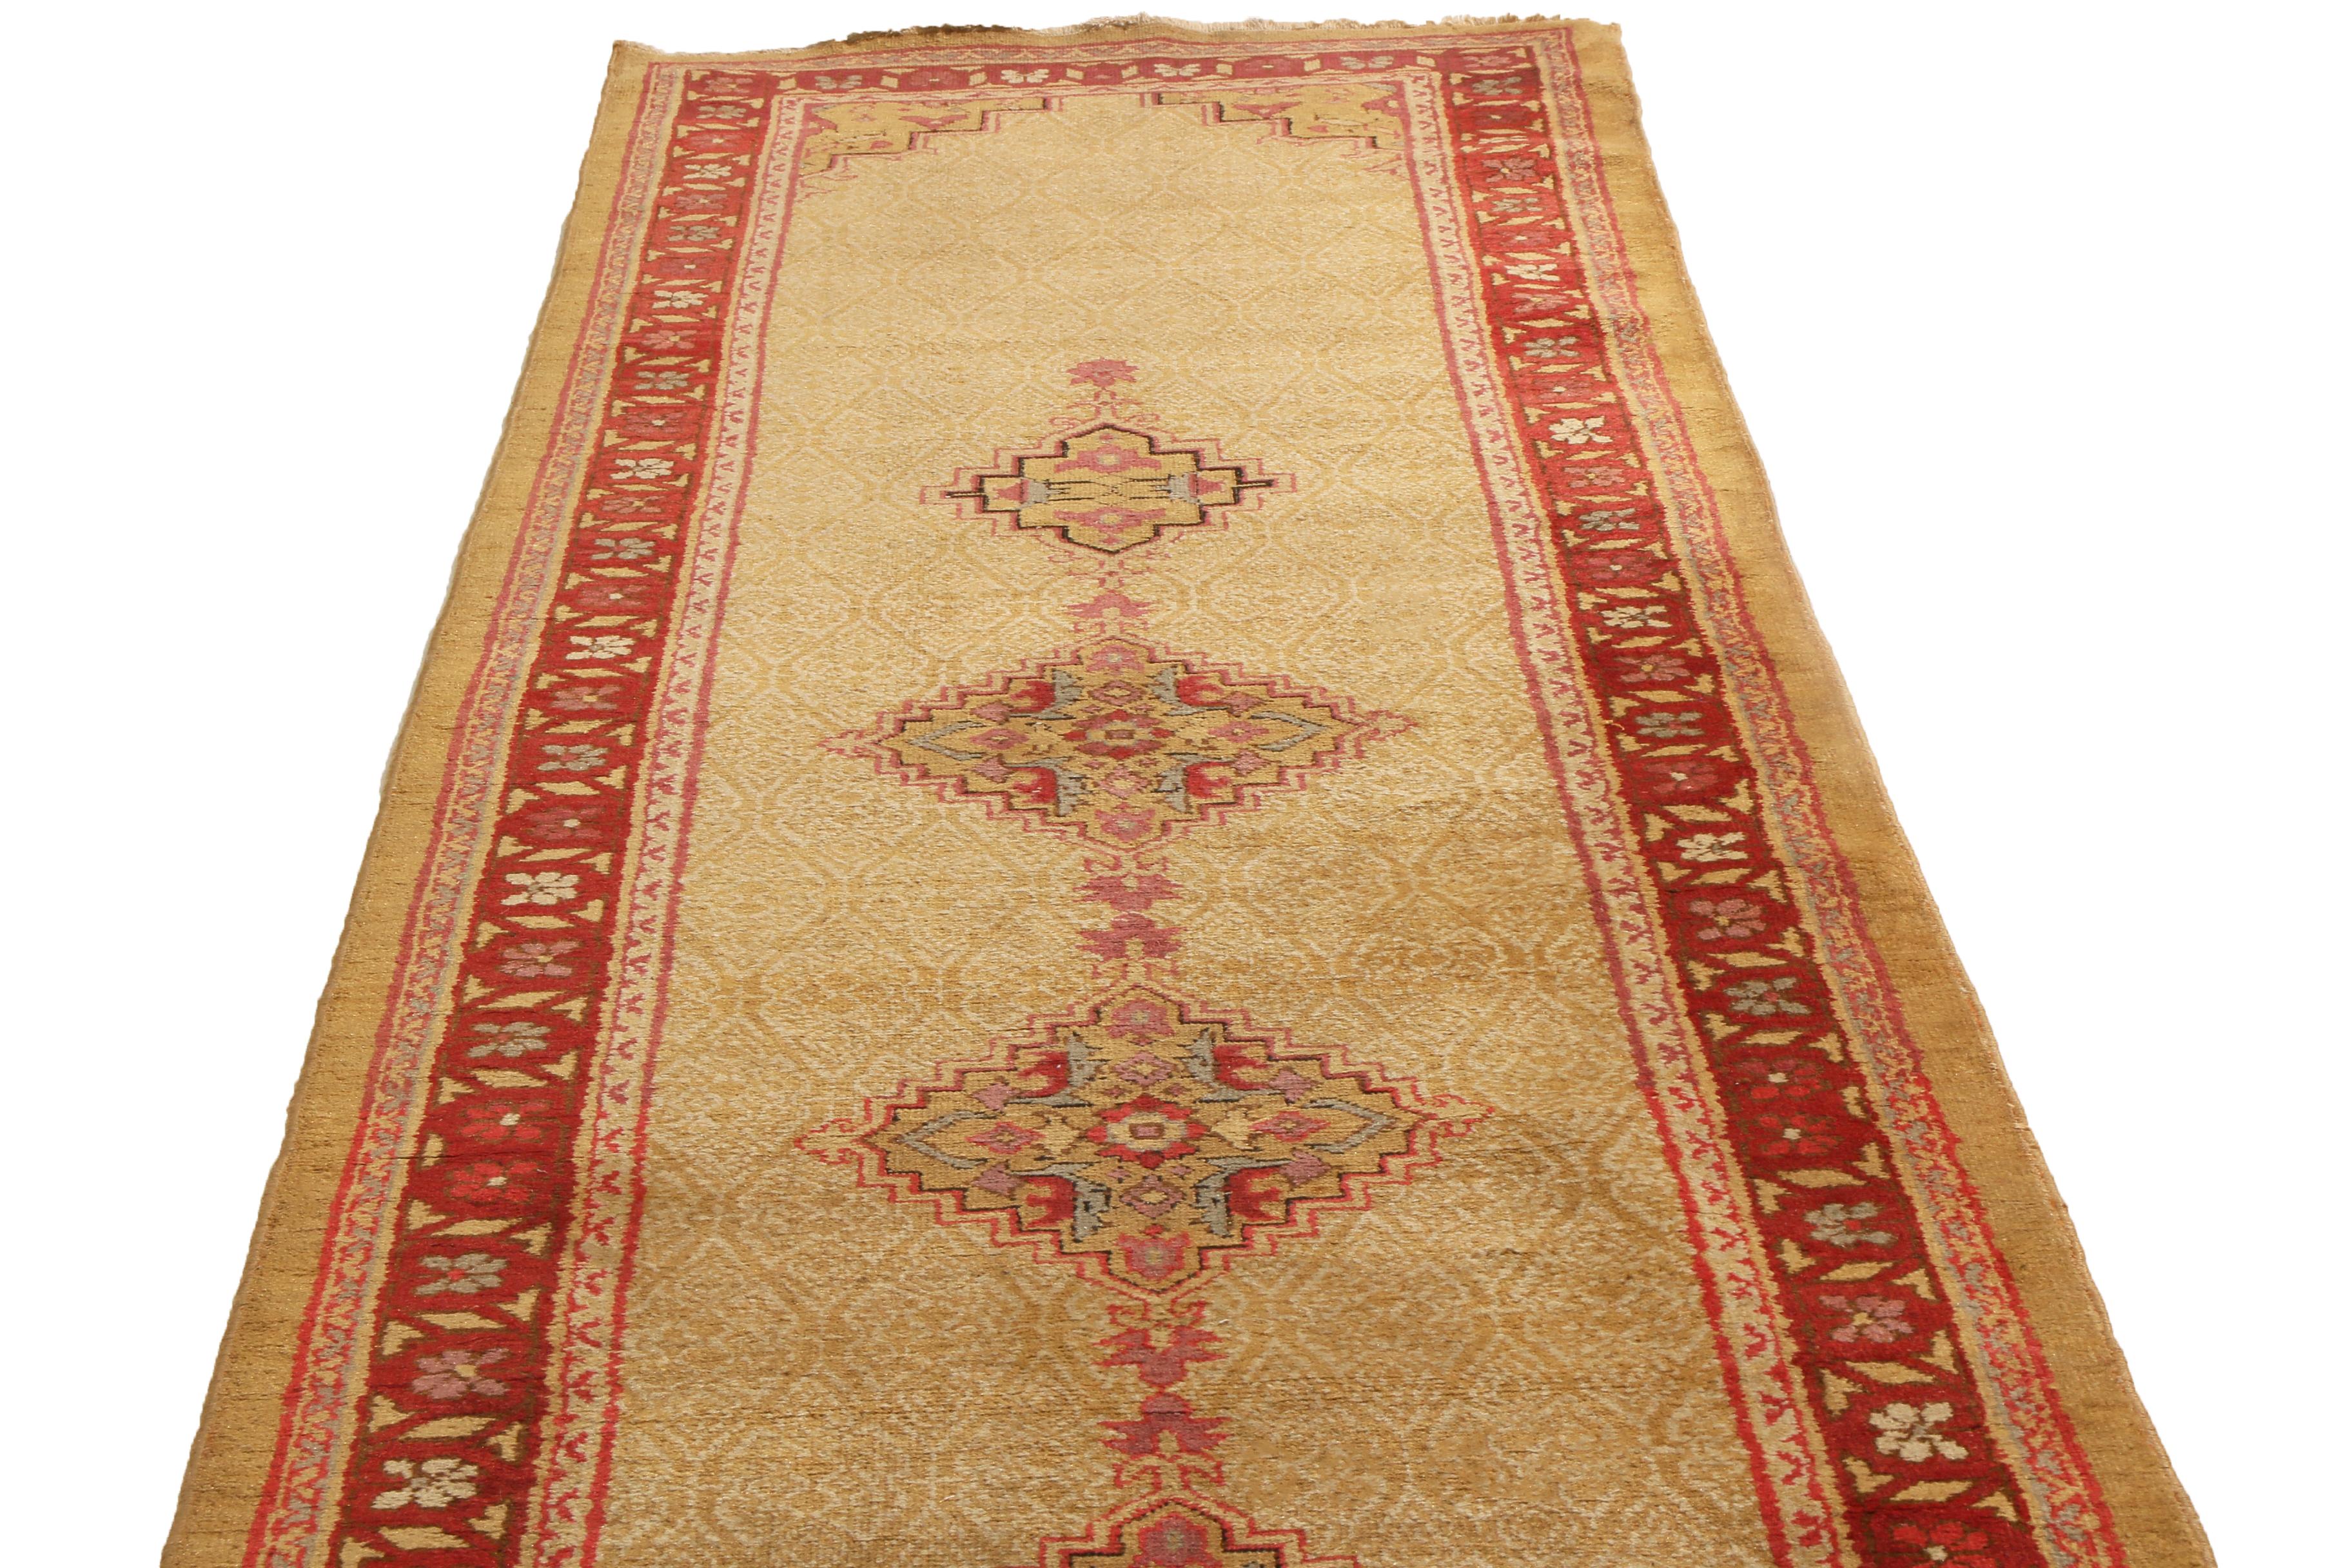 Originaire de l'Inde en 1890, cet ancien tapis d'Agra présente une riche bordure centrale de couleur bordeaux et bleue qui accentue le champ et les médaillons beiges et roses. Noué à la main dans une peluche de laine durable, le vaste champ de